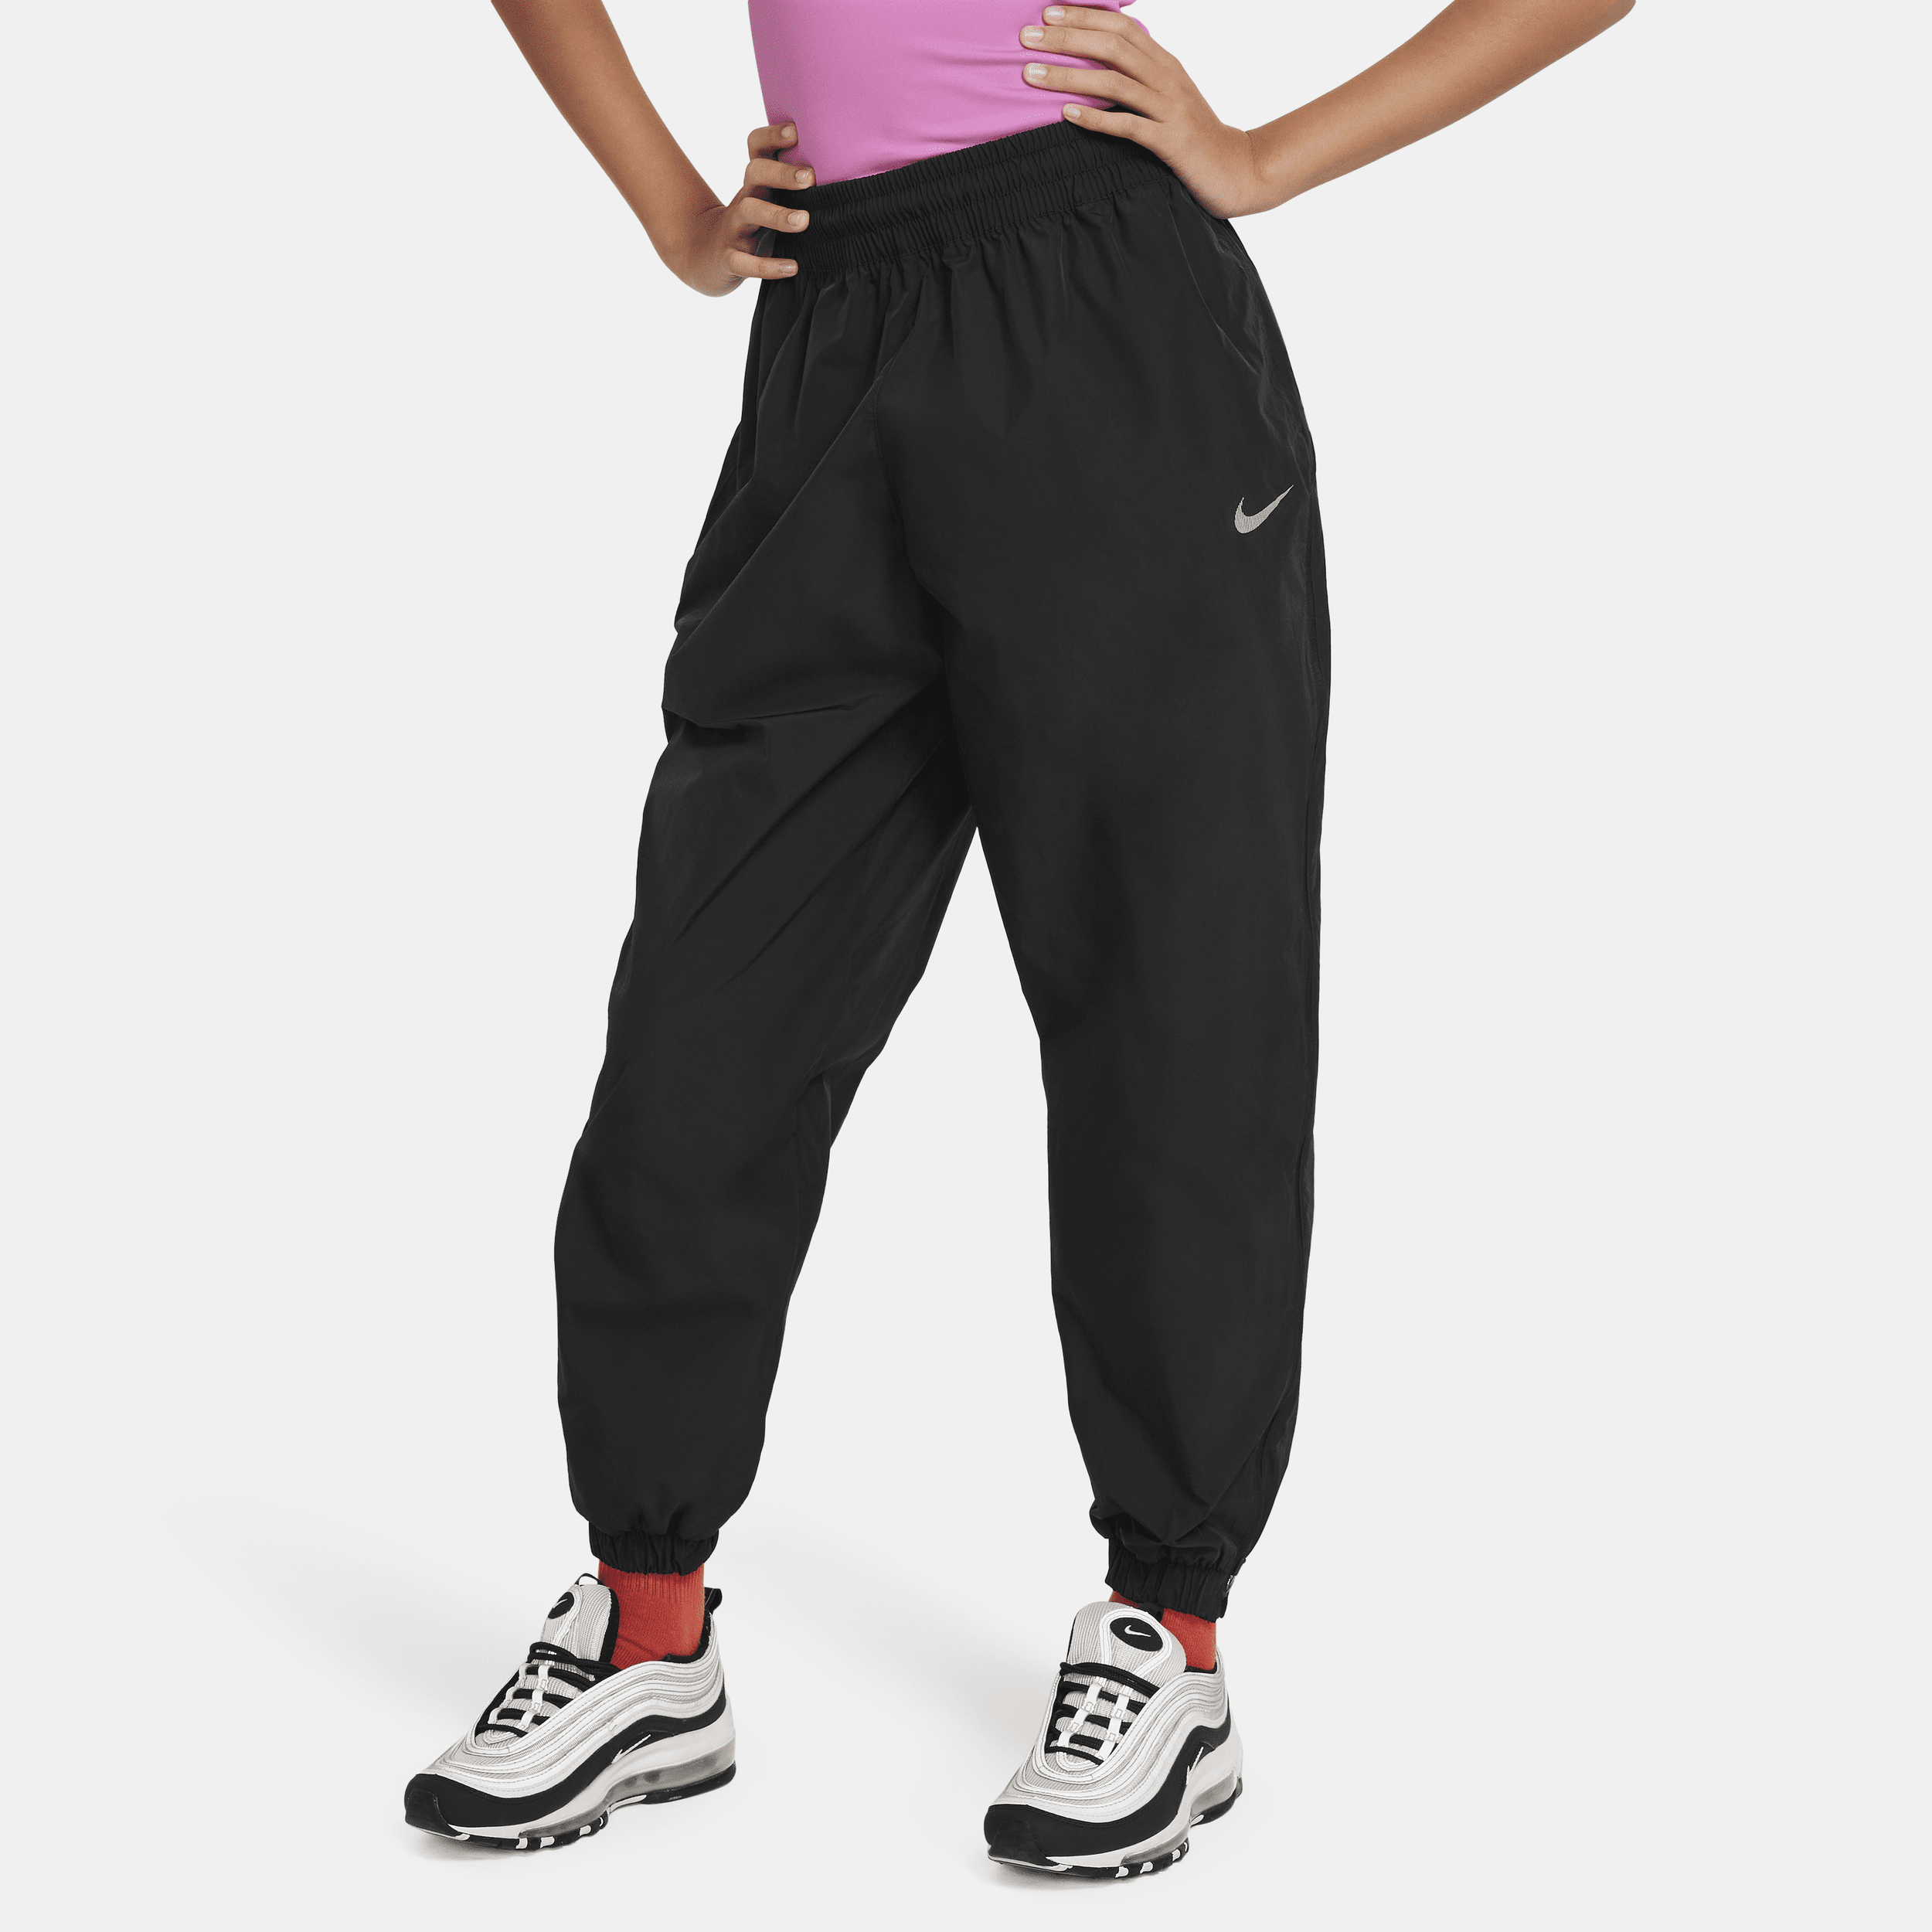 Vævede Nike Sportswear-bukser til større børn (piger) - sort